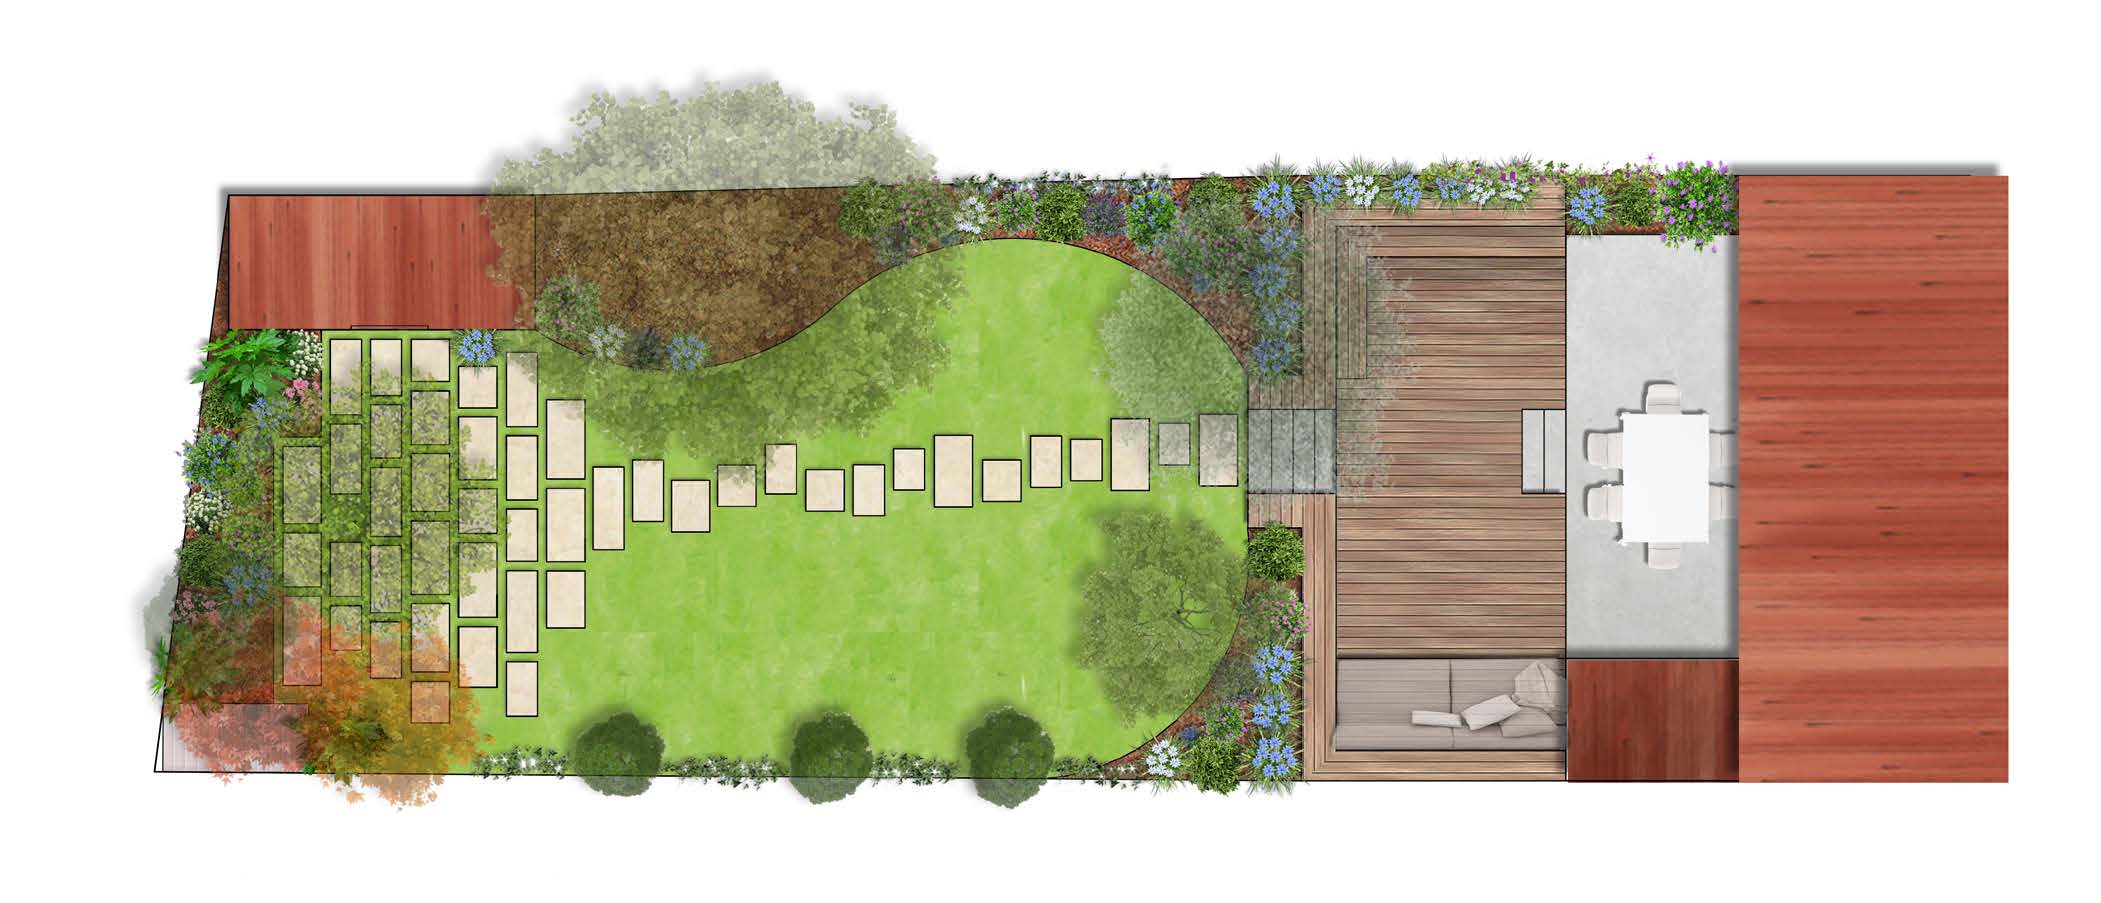 Plan d'aménagement d'un jardin d'échoppe avec la réalisation de massifs paysagers, et d'un espace détente au fond du jardin